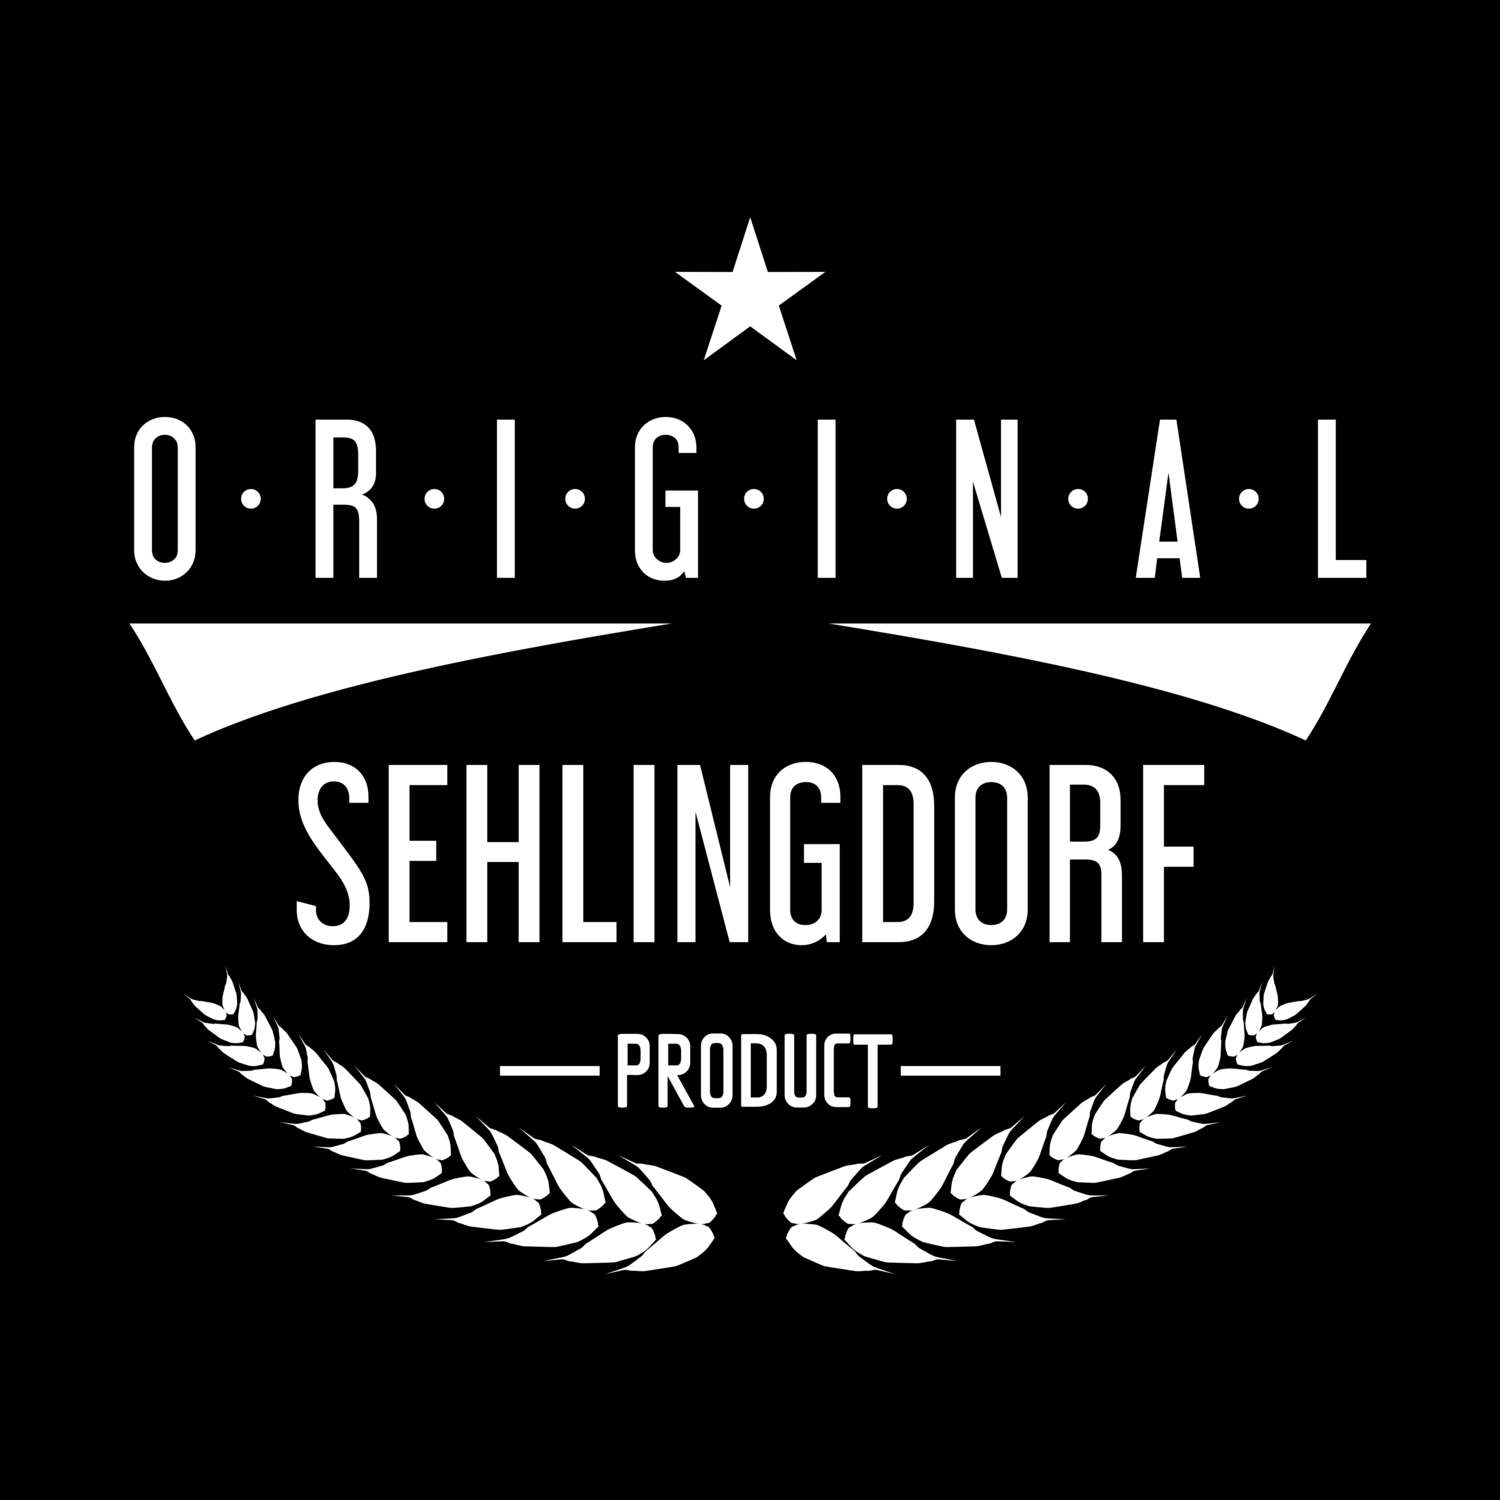 Sehlingdorf T-Shirt »Original Product«